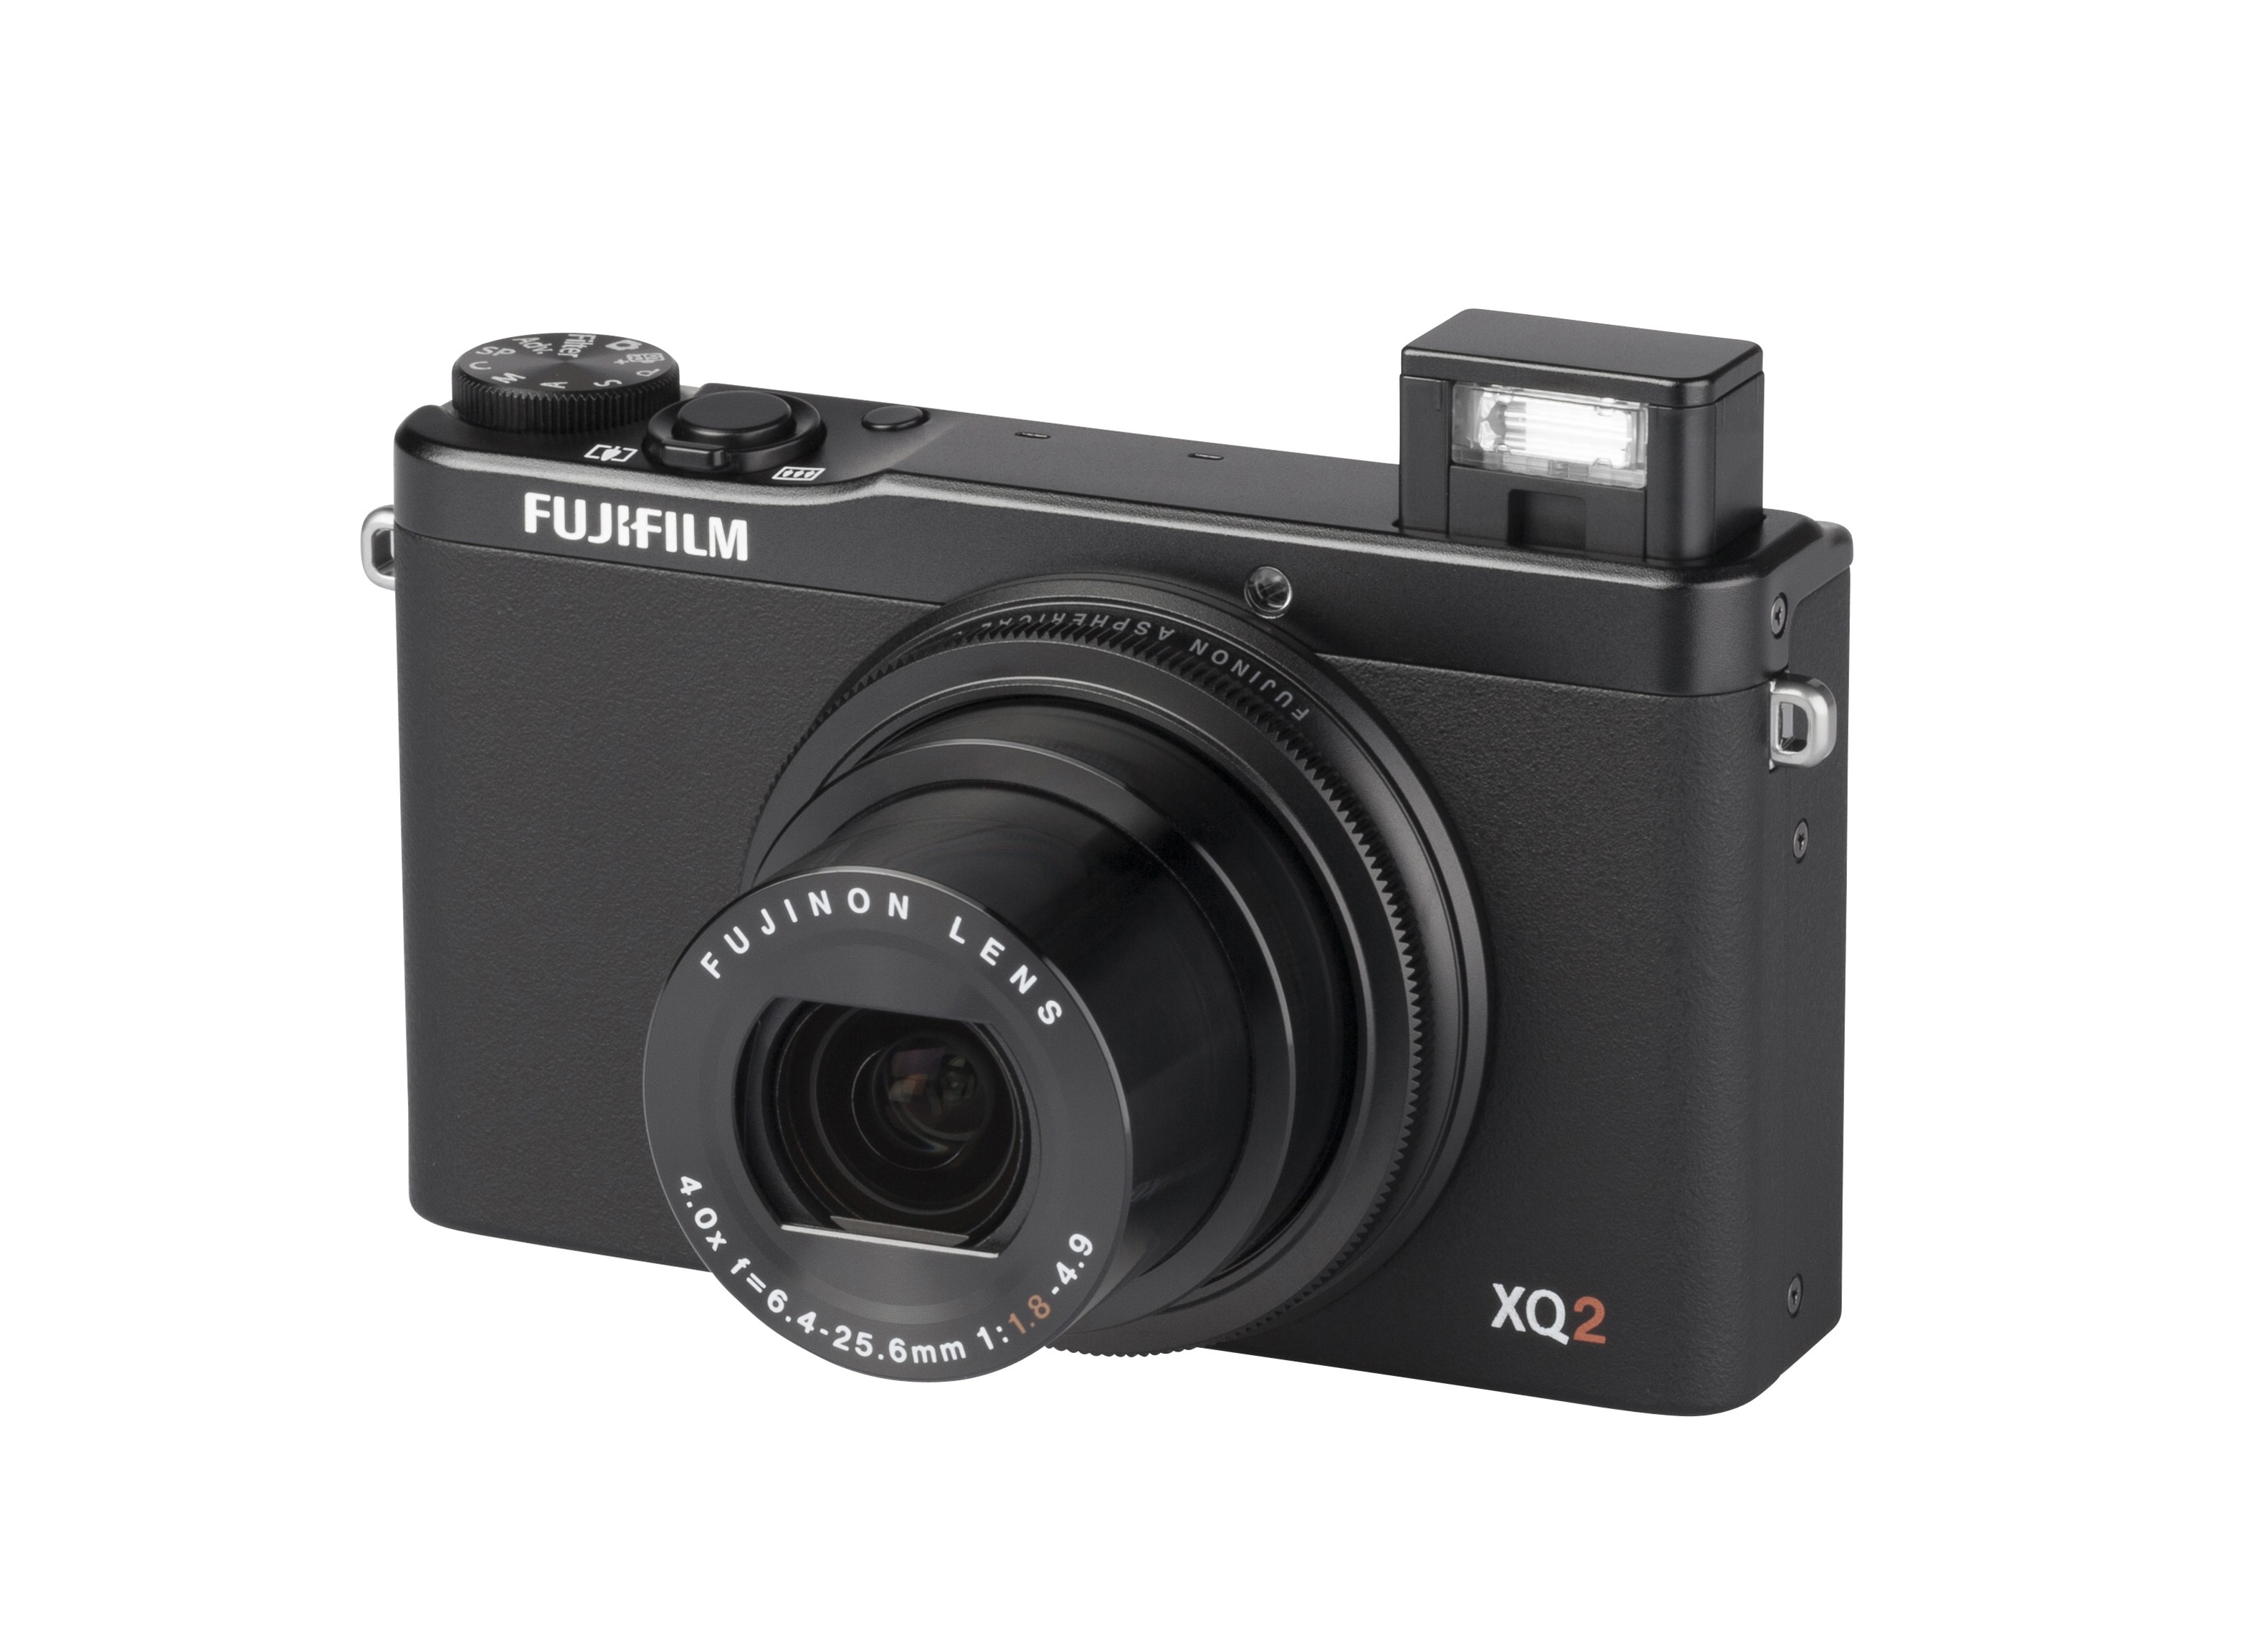 Fujifilm XQ2 Camera Review - Consumer Reports